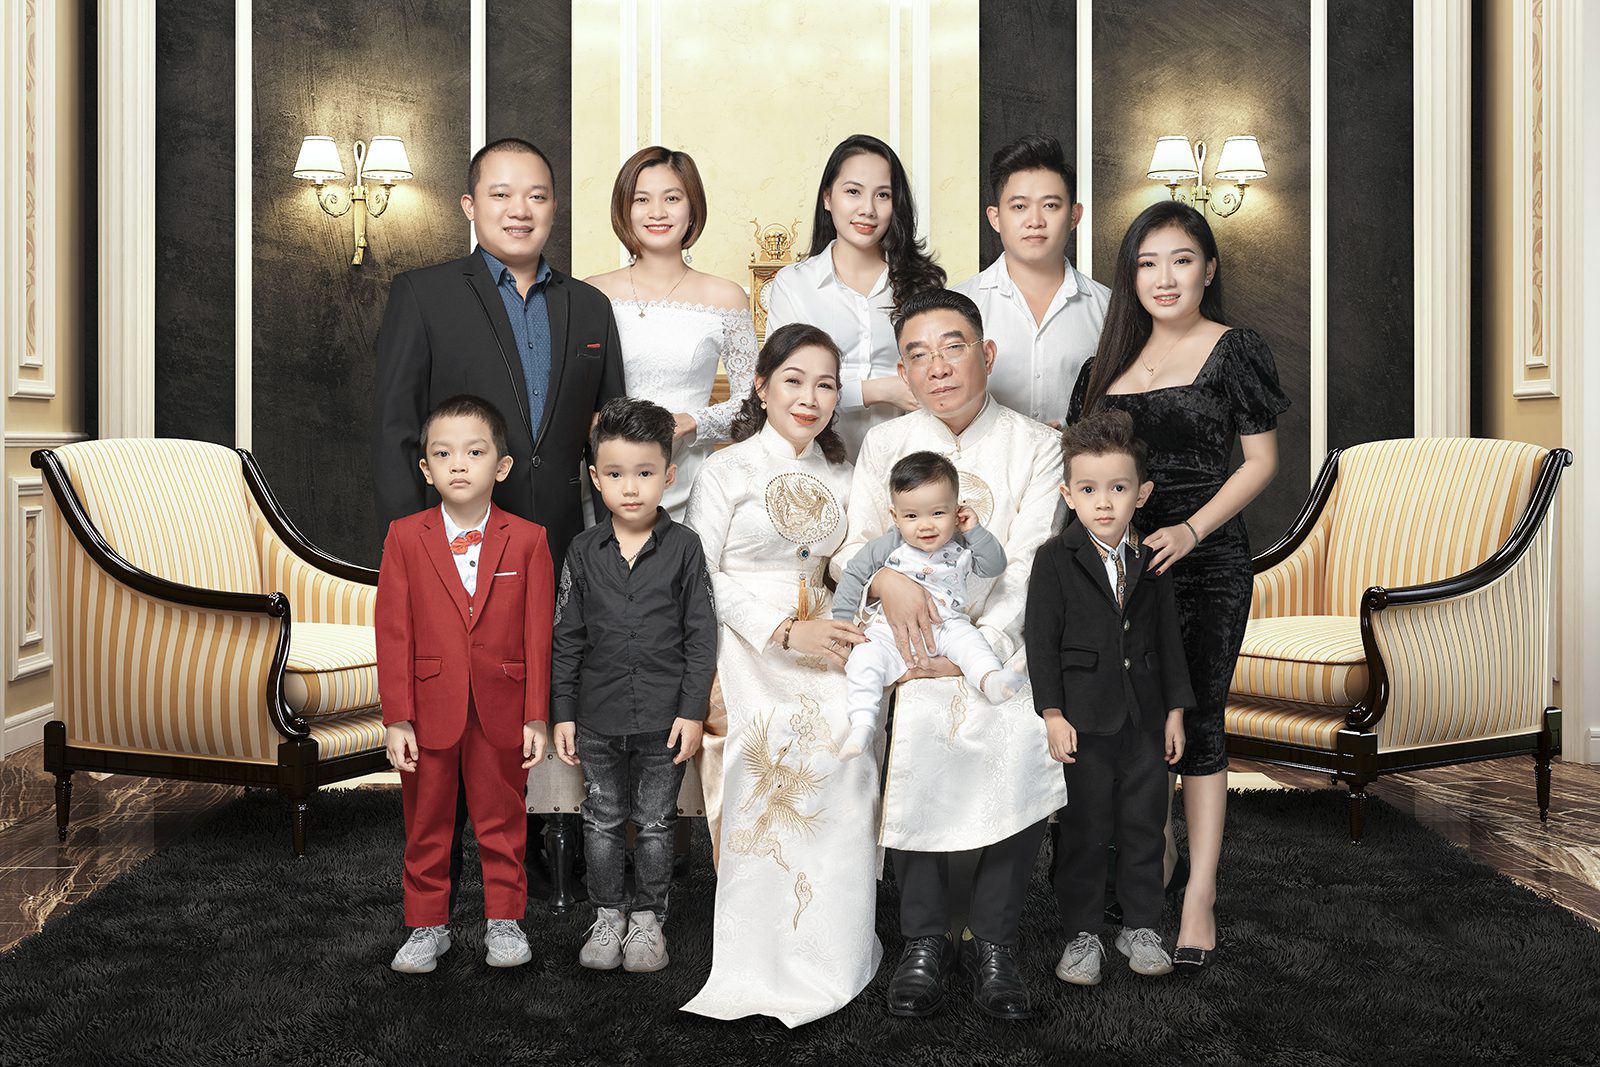 Trang phục chụp ảnh gia đình: Cách chọn đồ, phối đồ đẹp và phù hợp nhất